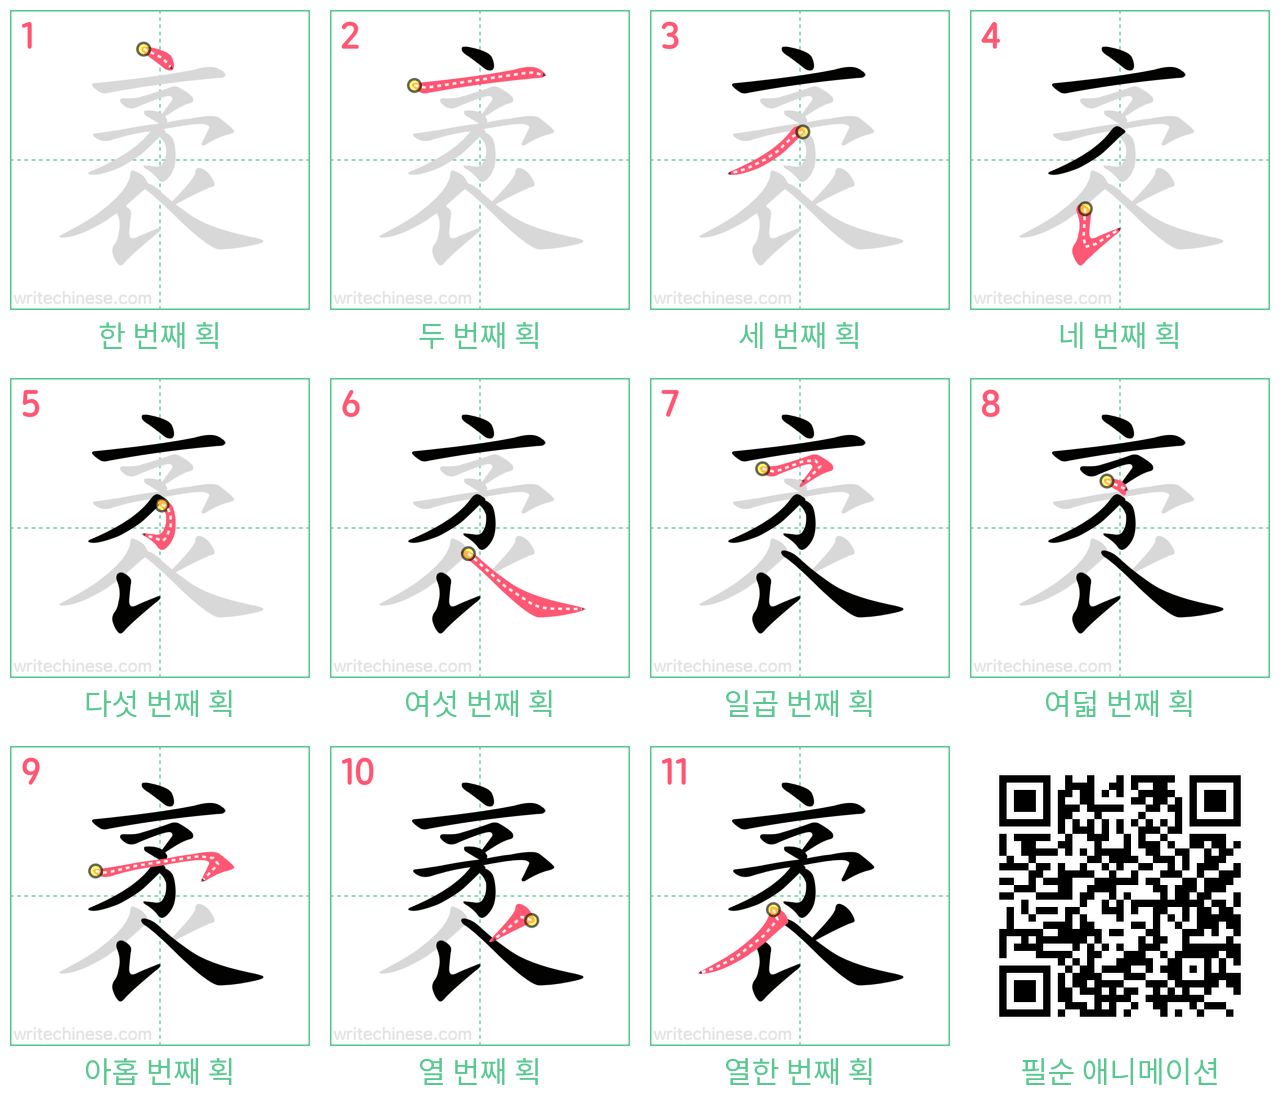 袤 step-by-step stroke order diagrams